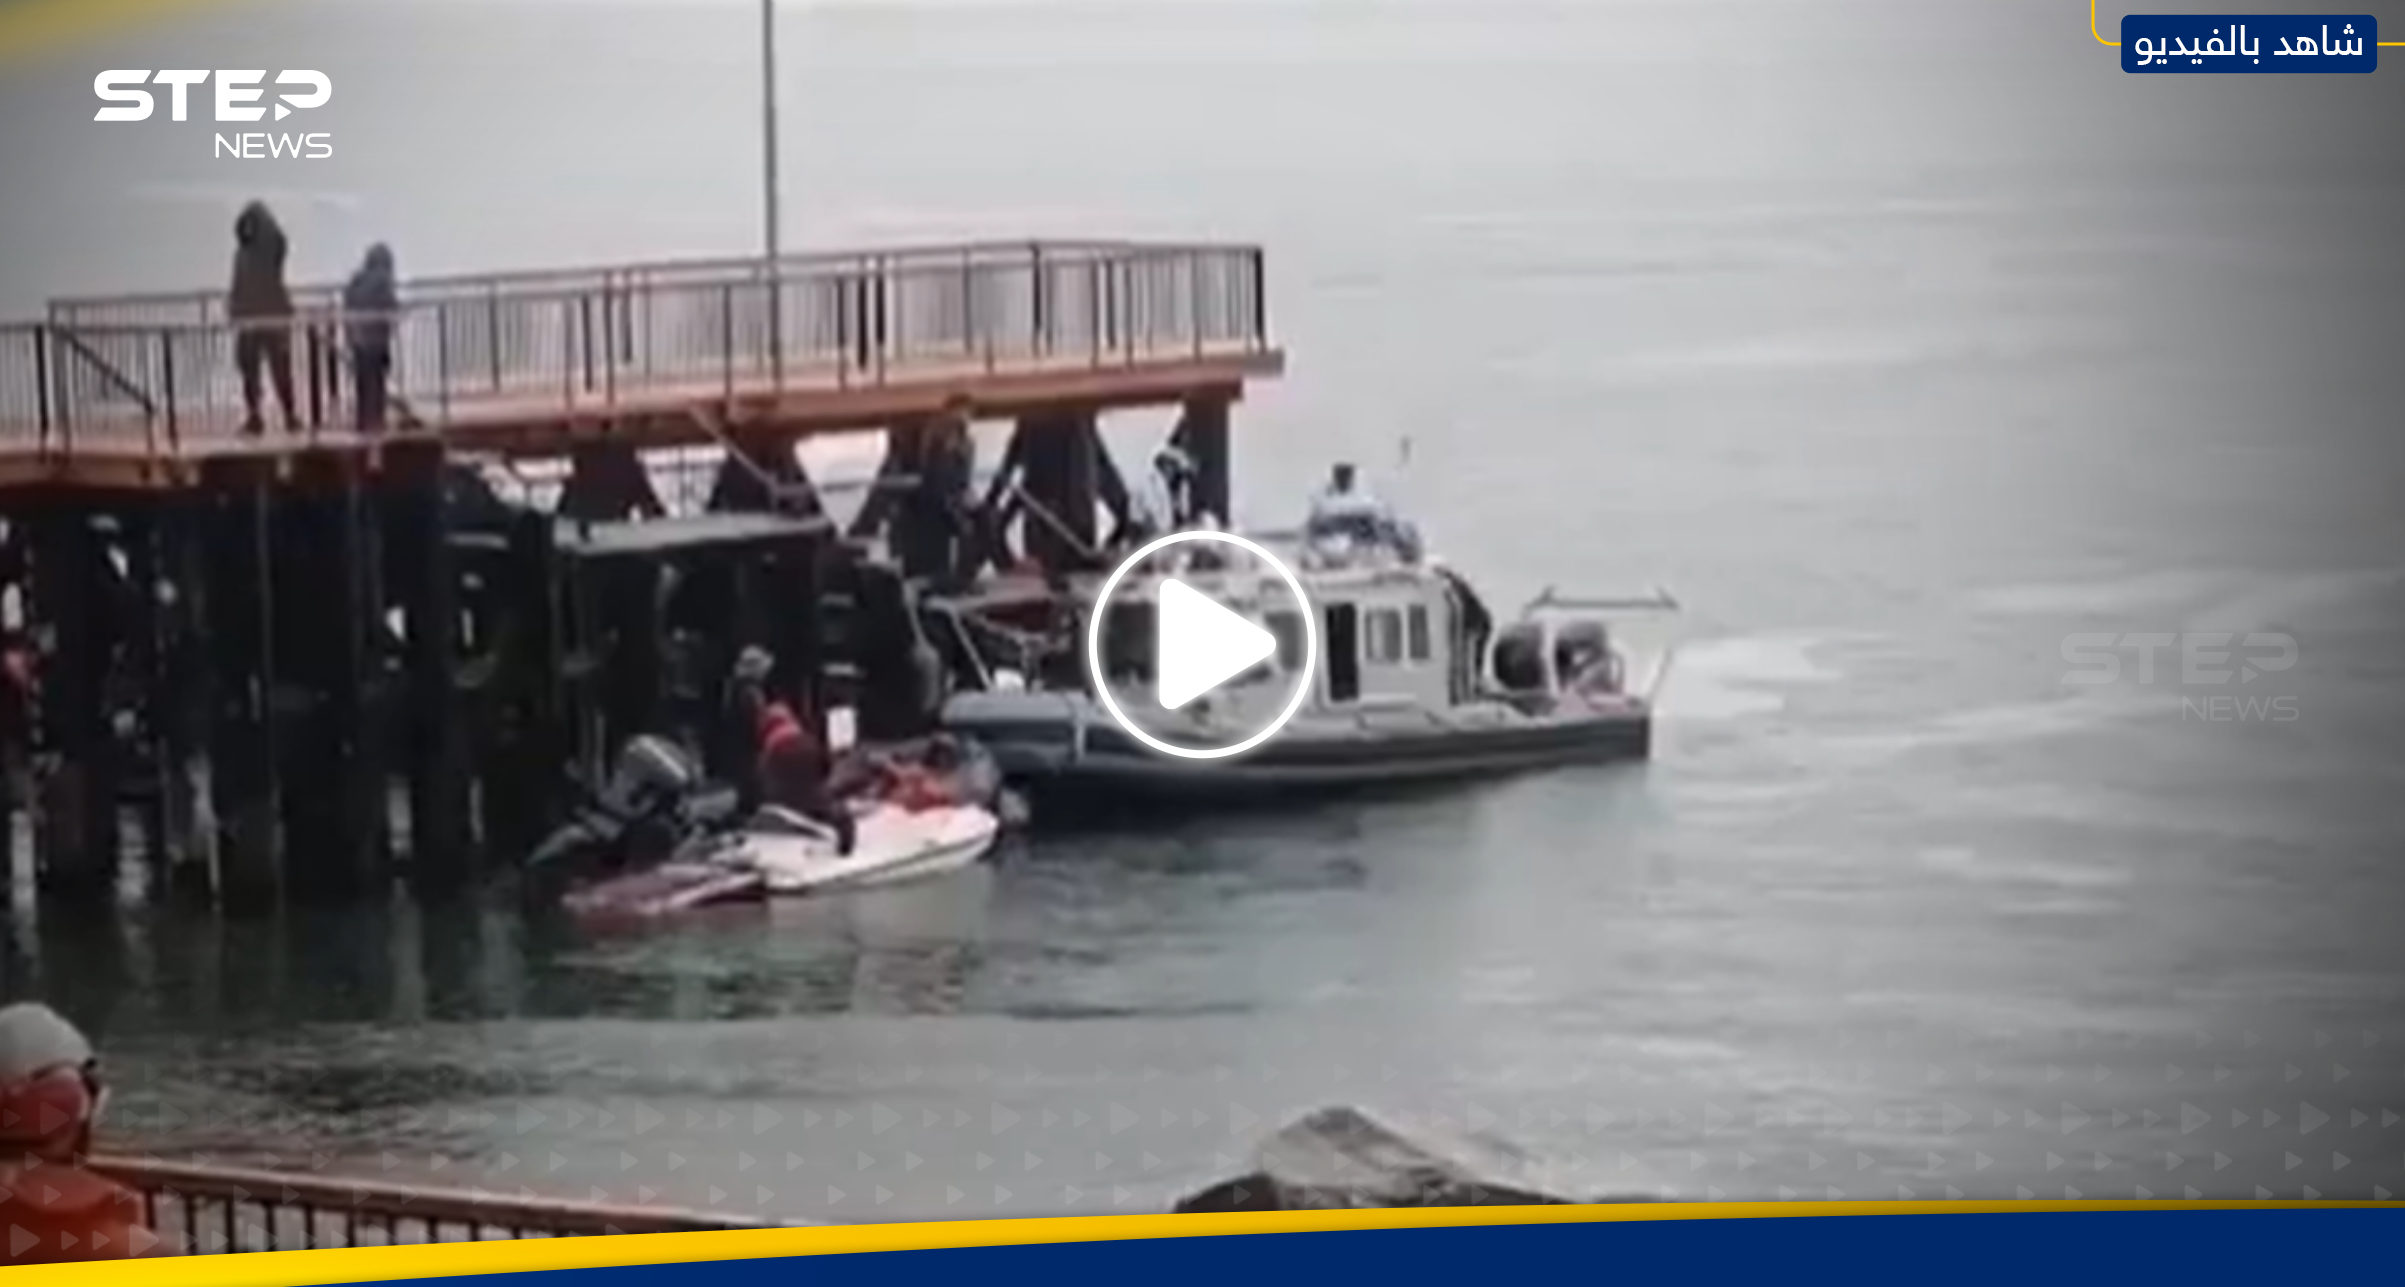 بالفيديو|| لحظة إيجاد جثة رئيس تشيلي السابق بعد سقوط طائرته الخاصة بالبحر